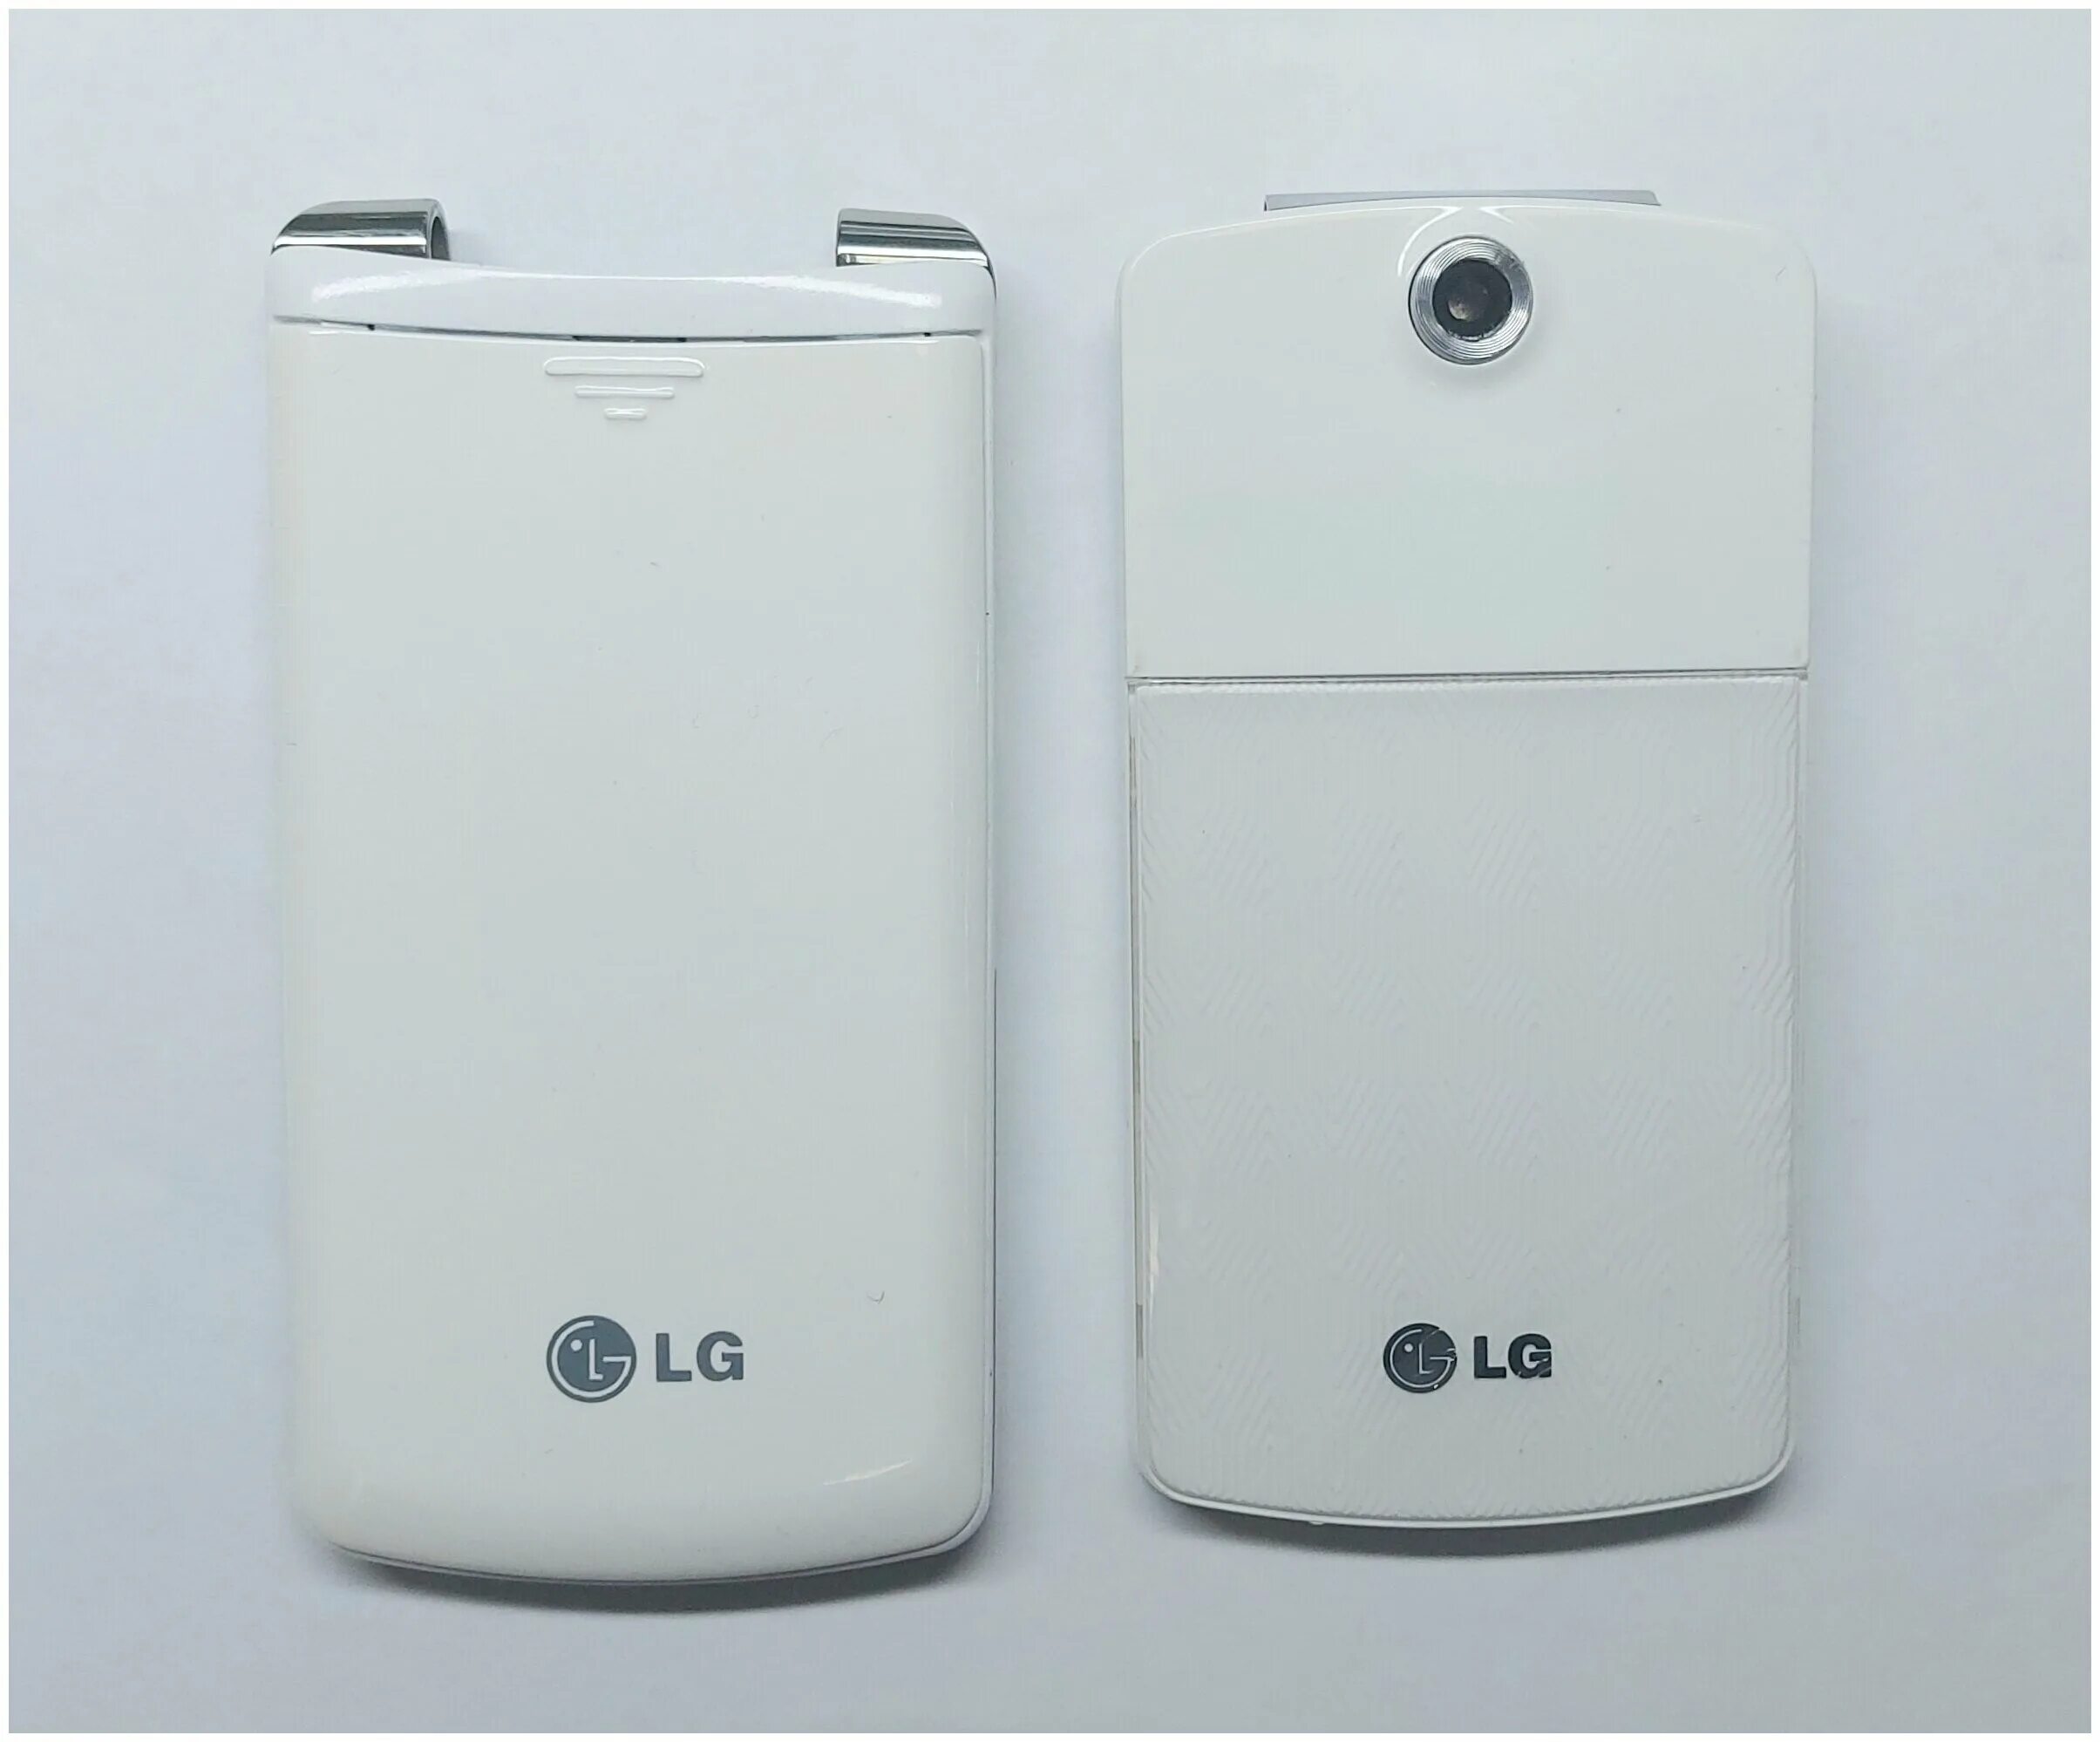 LG kf350. Корпус для LG-kf301. Телефон раскладушка LG kf350. Старый корпус LG. Купить корпус lg